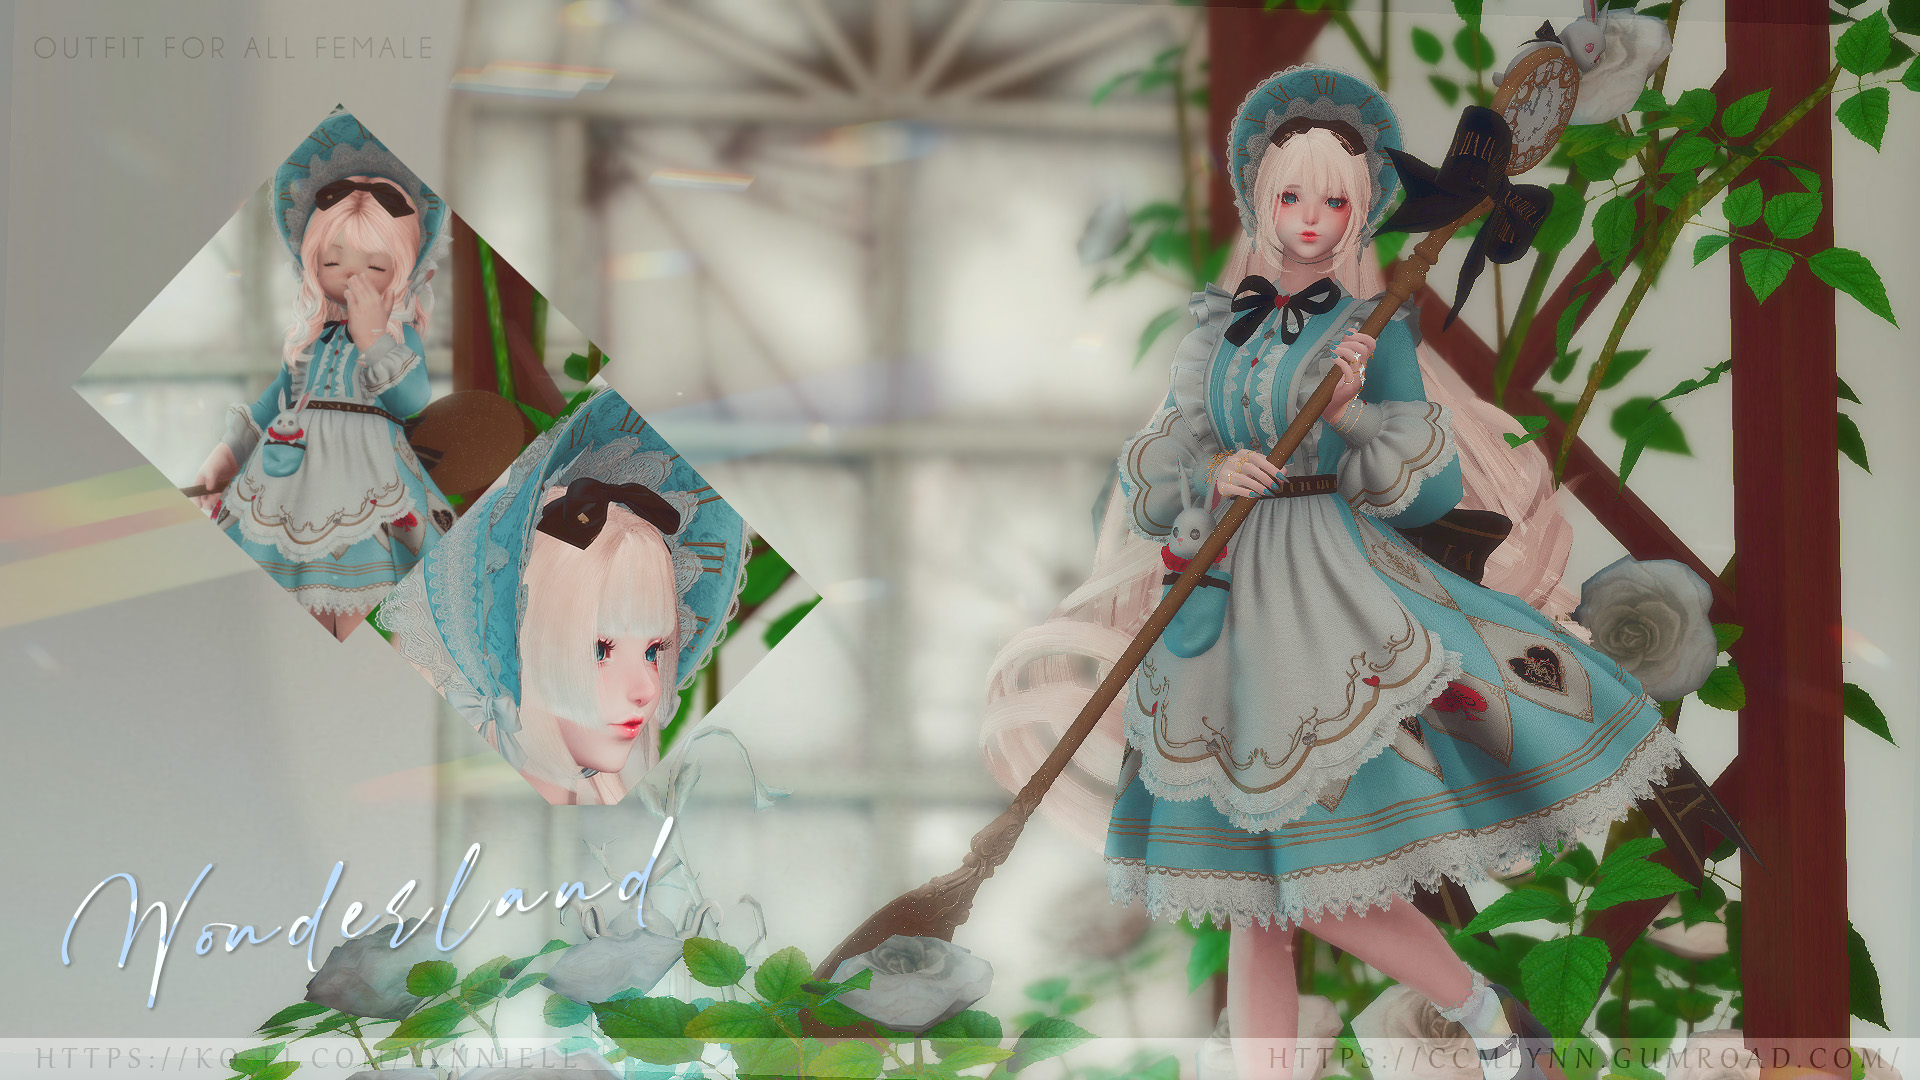 [林恩]仙境公主服饰 – 洛丽塔连衣裙插图